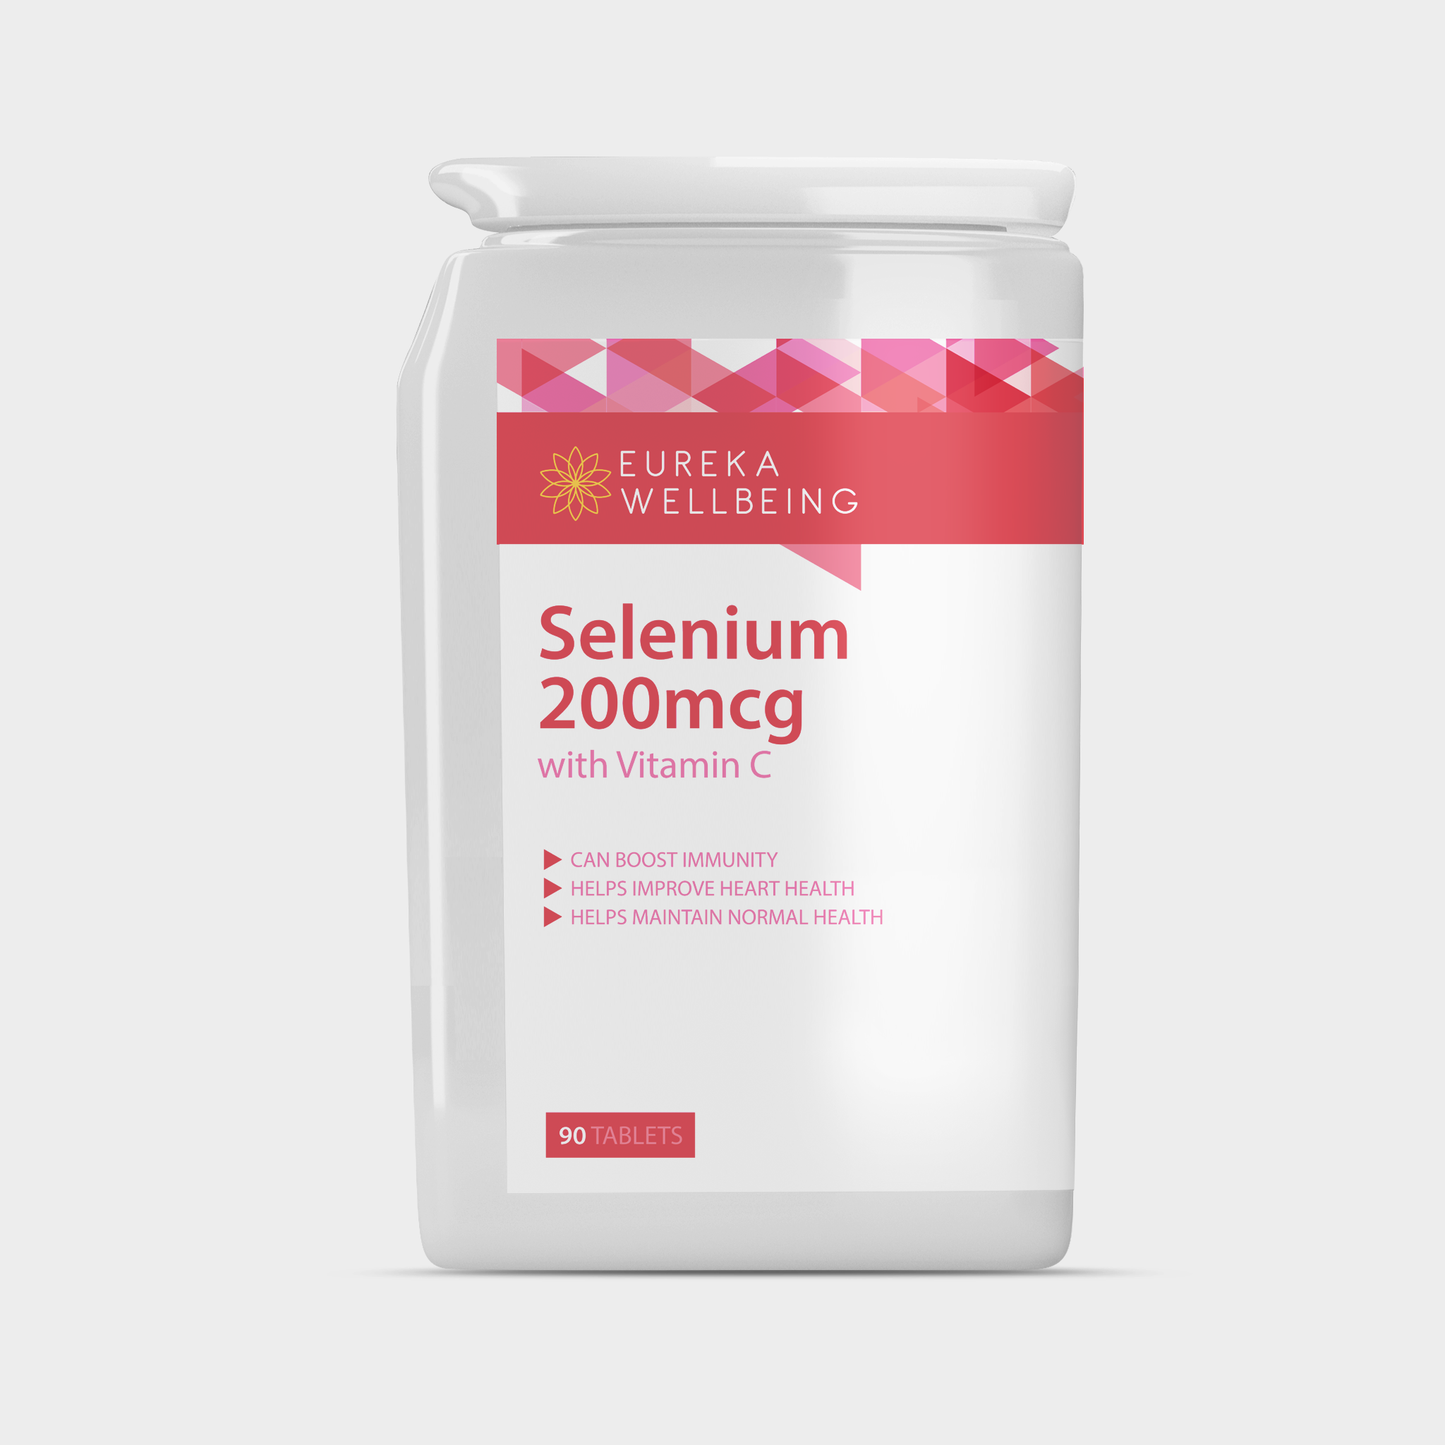 Selenium 200mcg with Vitamin C